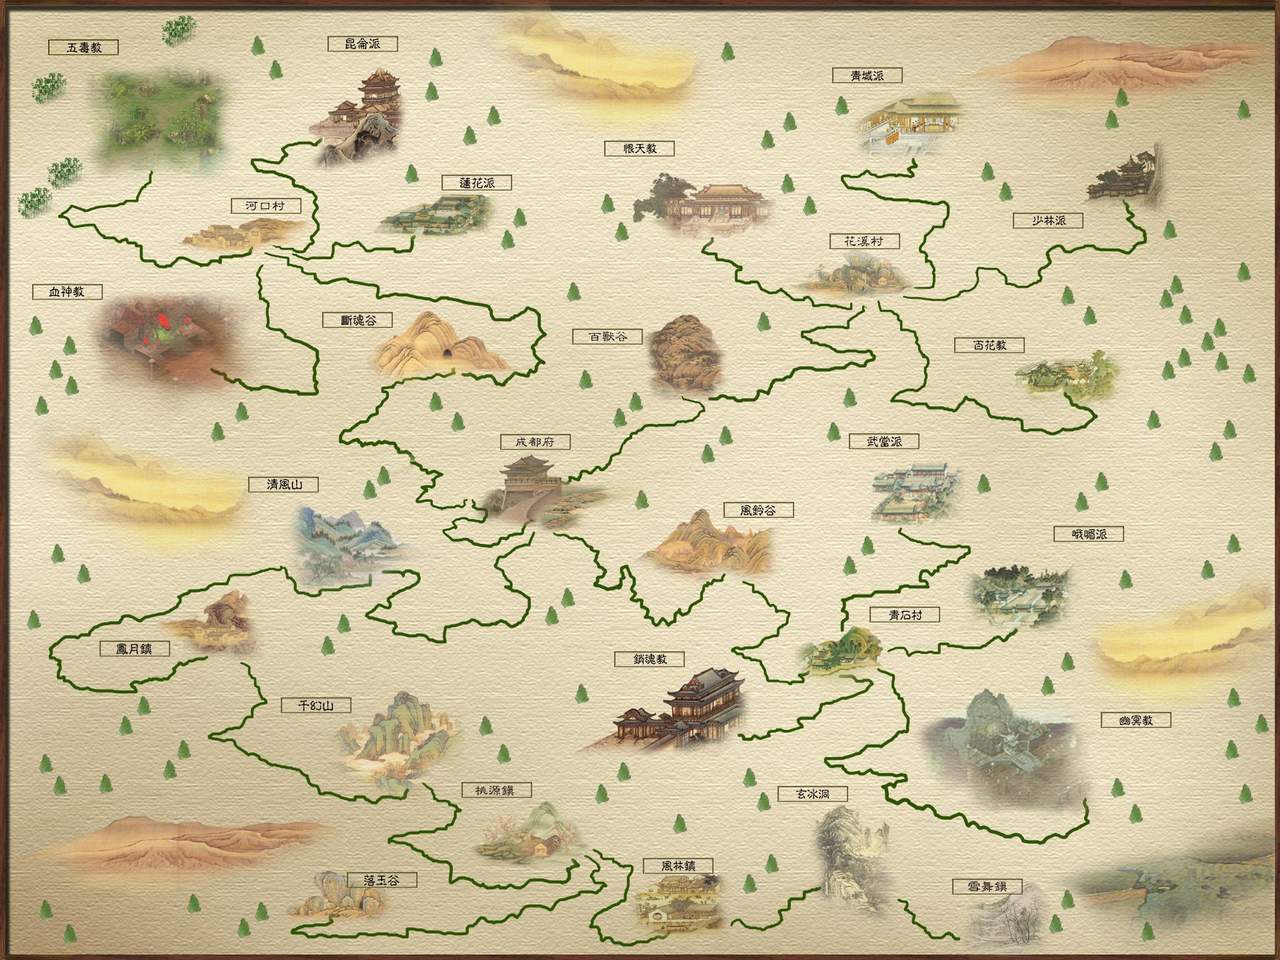 《仙侣奇缘》世界地图